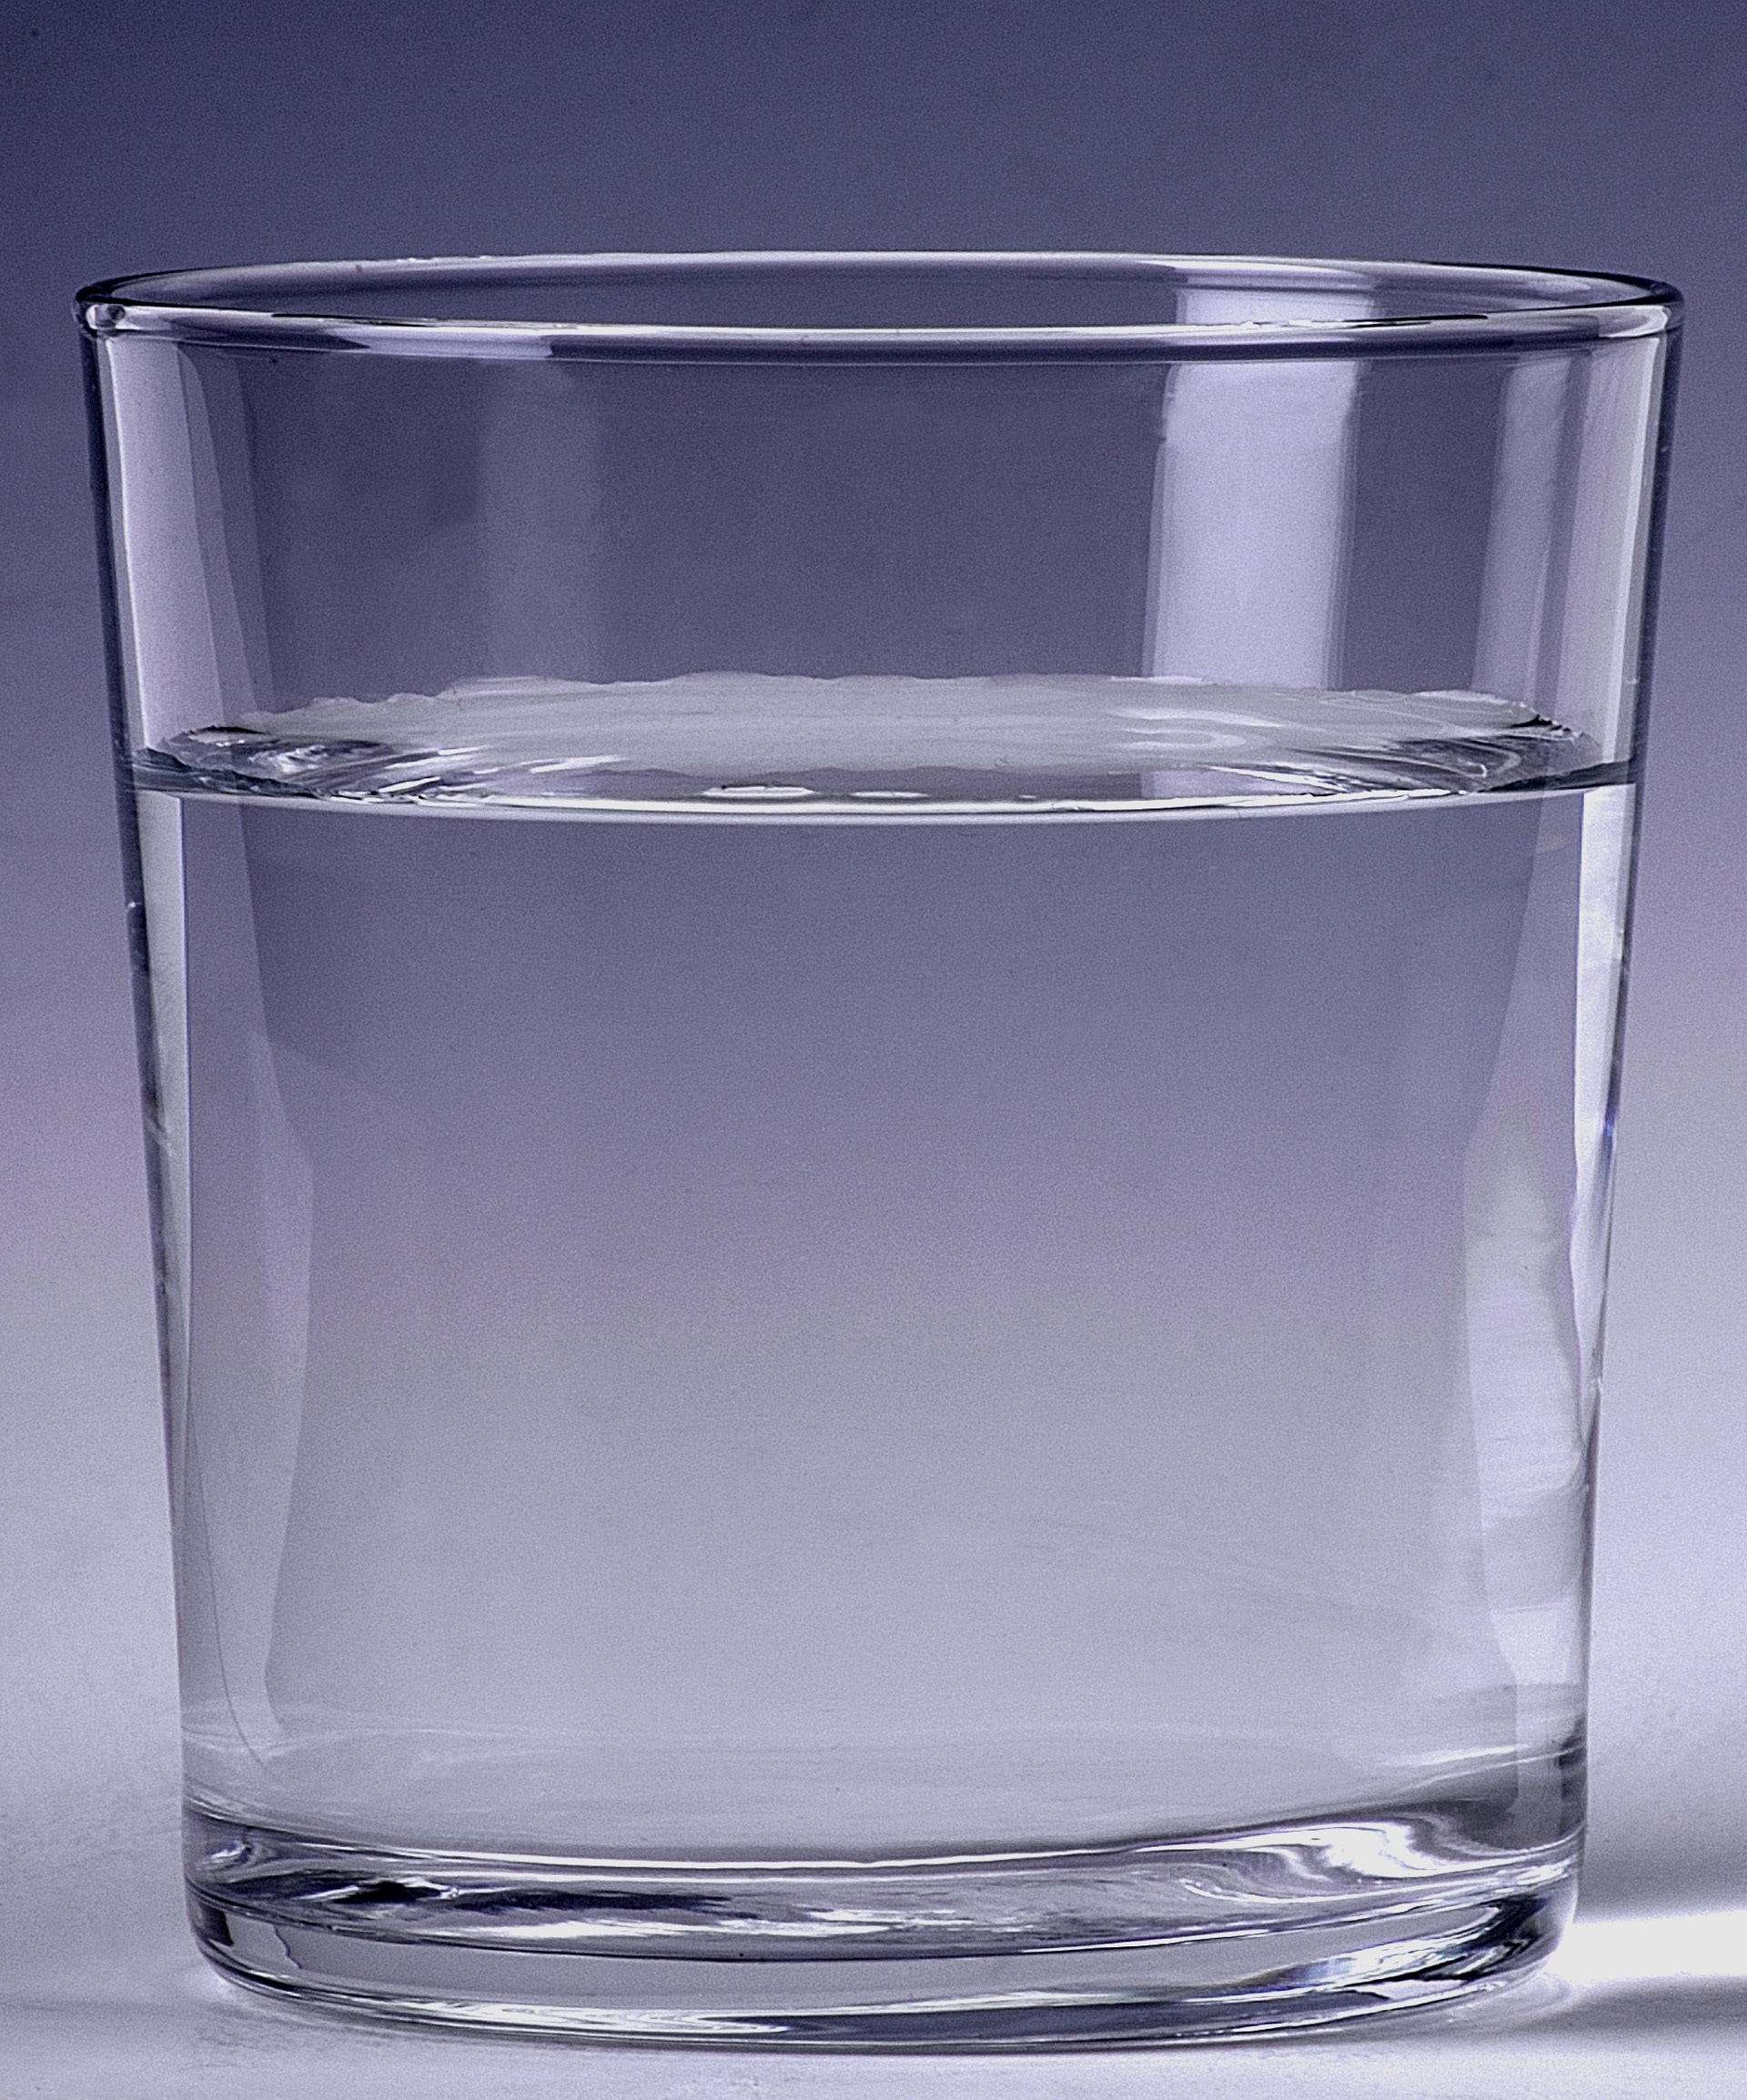 стакан с водой на столе